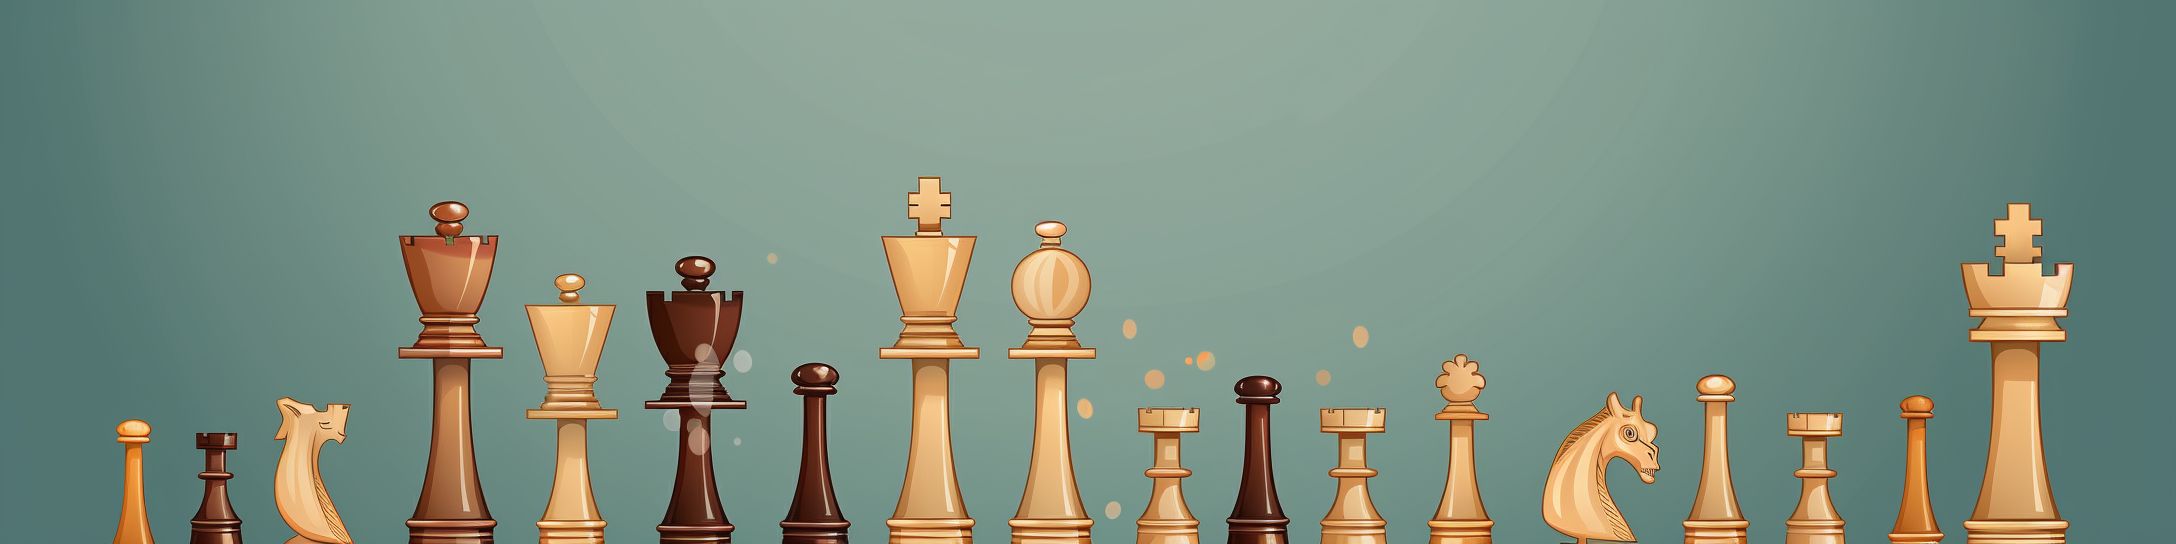 Taille du jeu d'échecs : guide pour débutants